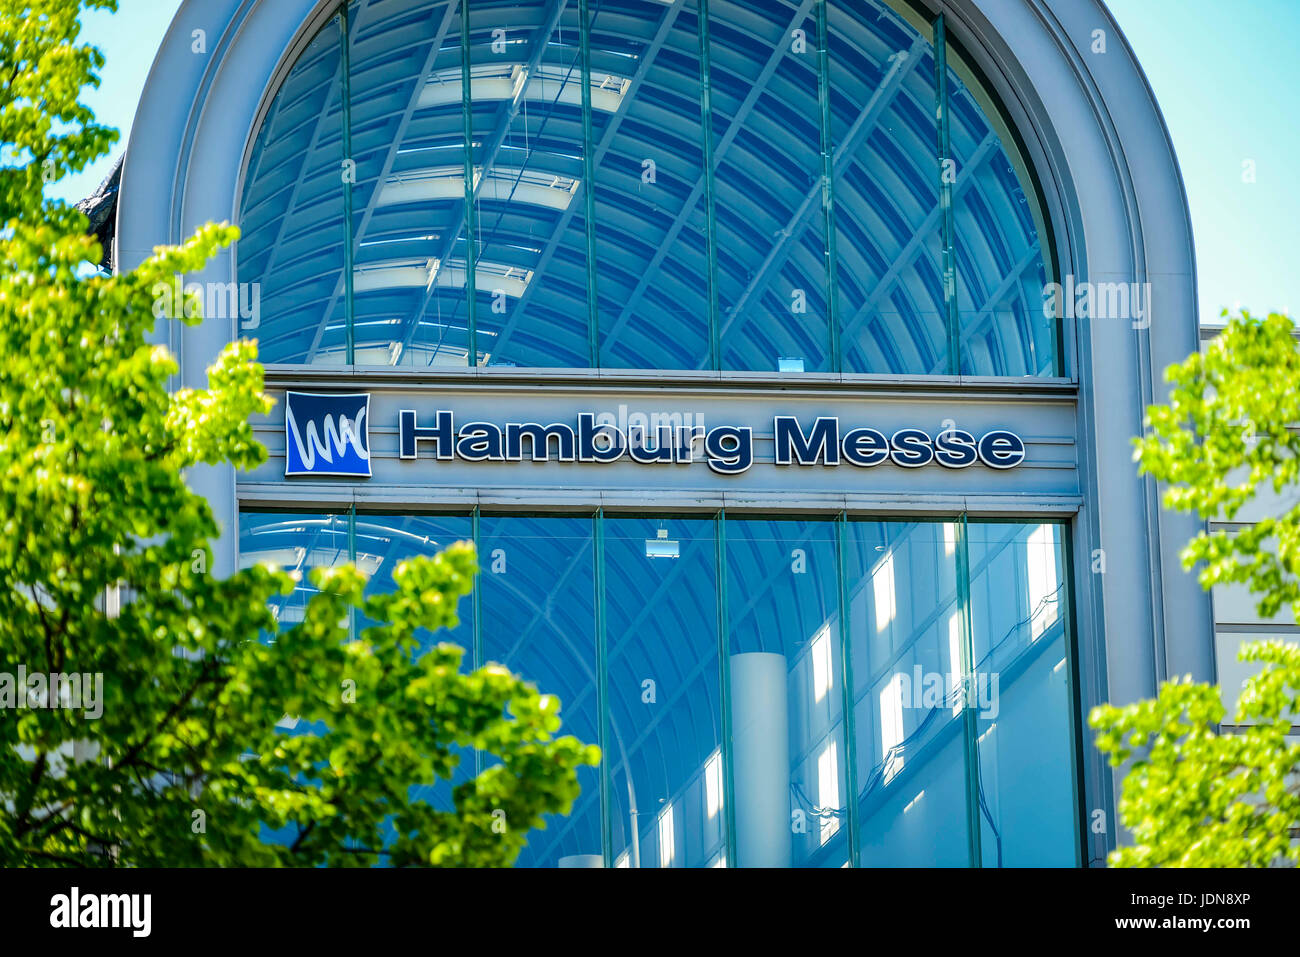 Foire de Hambourg, l'entrée à l'Est, Allemagne, Europe, Hamburg Messe, Eingang Ost, Deutschland, Europa Banque D'Images